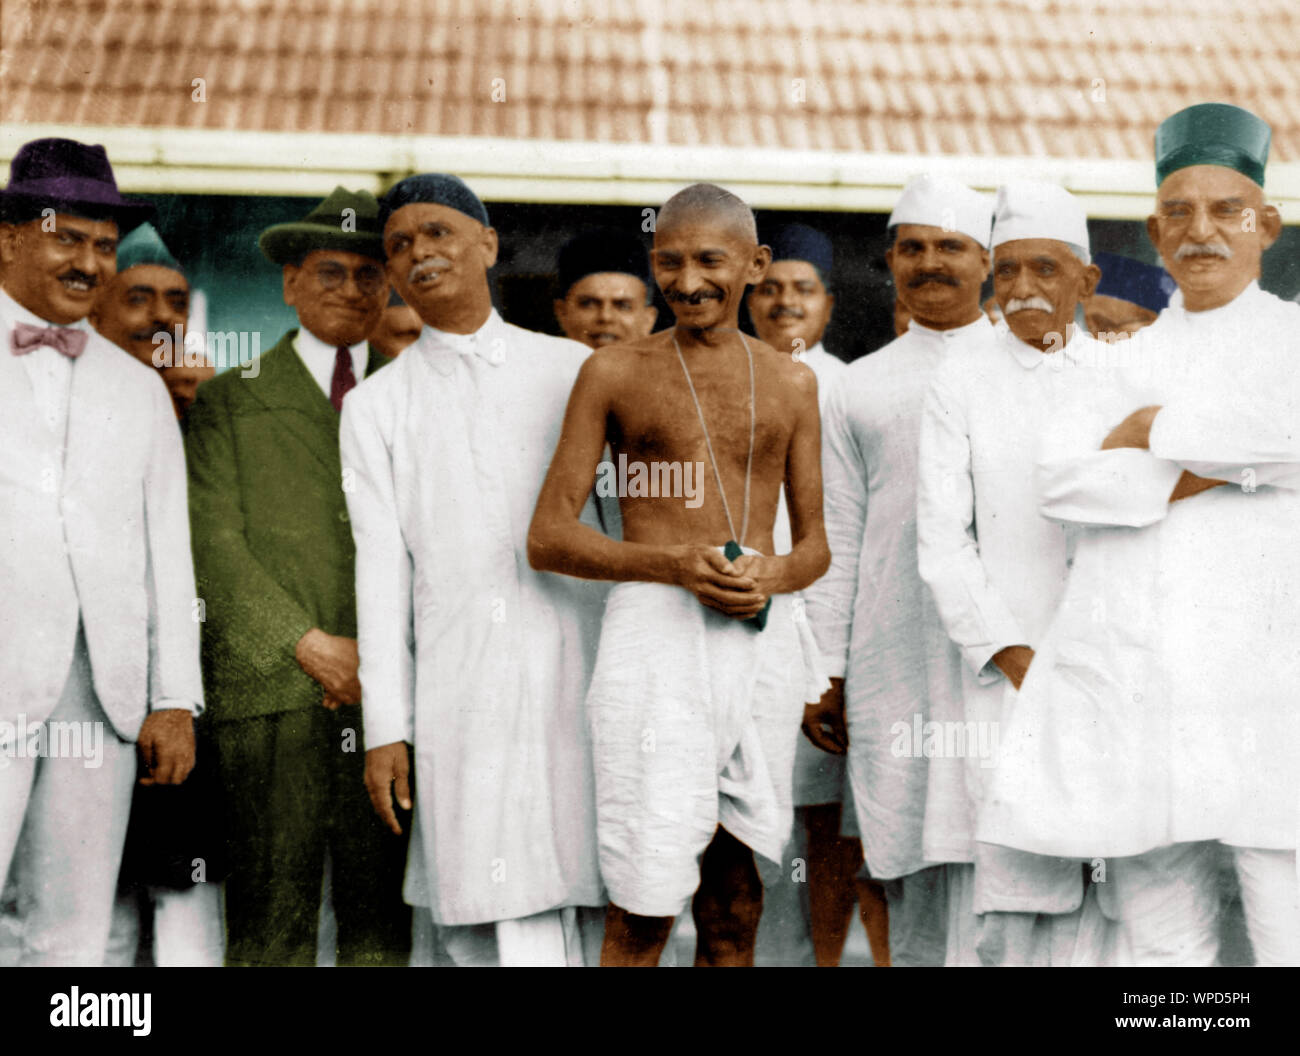 Mahatma Gandhi garden party donné à délégation sud-africaine, Bombay, Inde, Asie, 19 Septembre, 1926 Banque D'Images